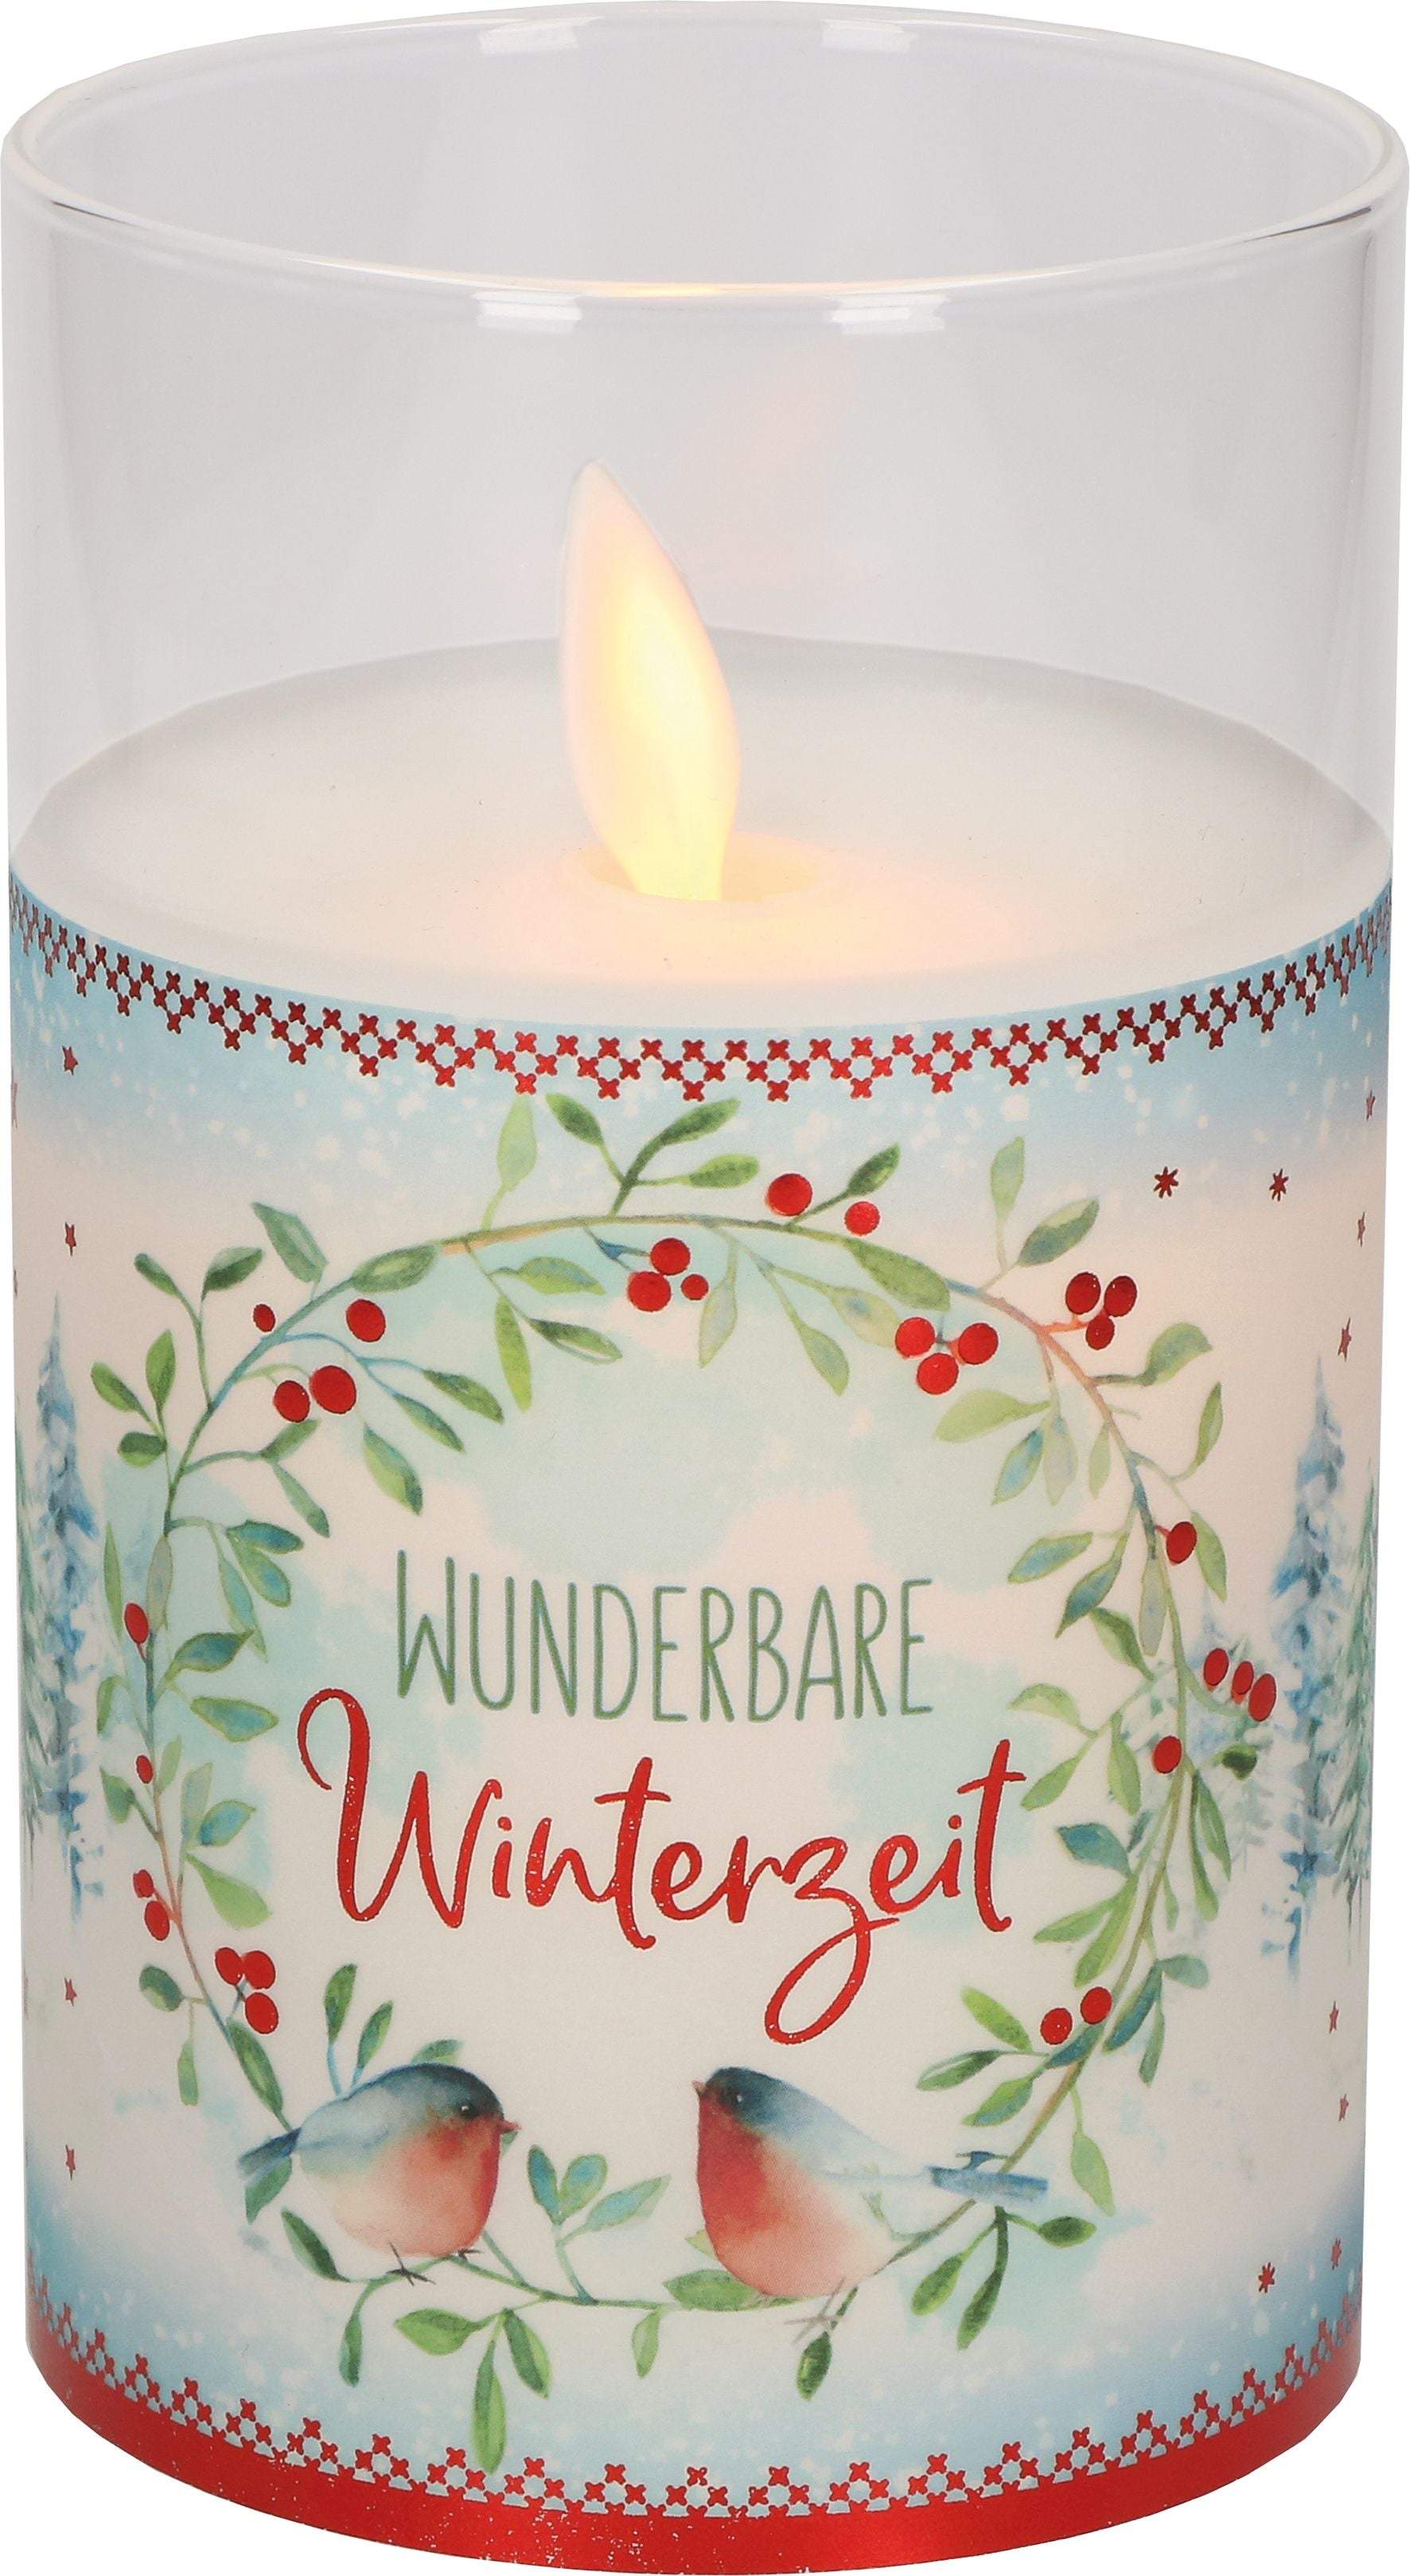 LED-Glaswindlicht "Wunderbare Winterzeit"-Butzon & Bercker-Geschenkideen,Kerzen,Weihnachten